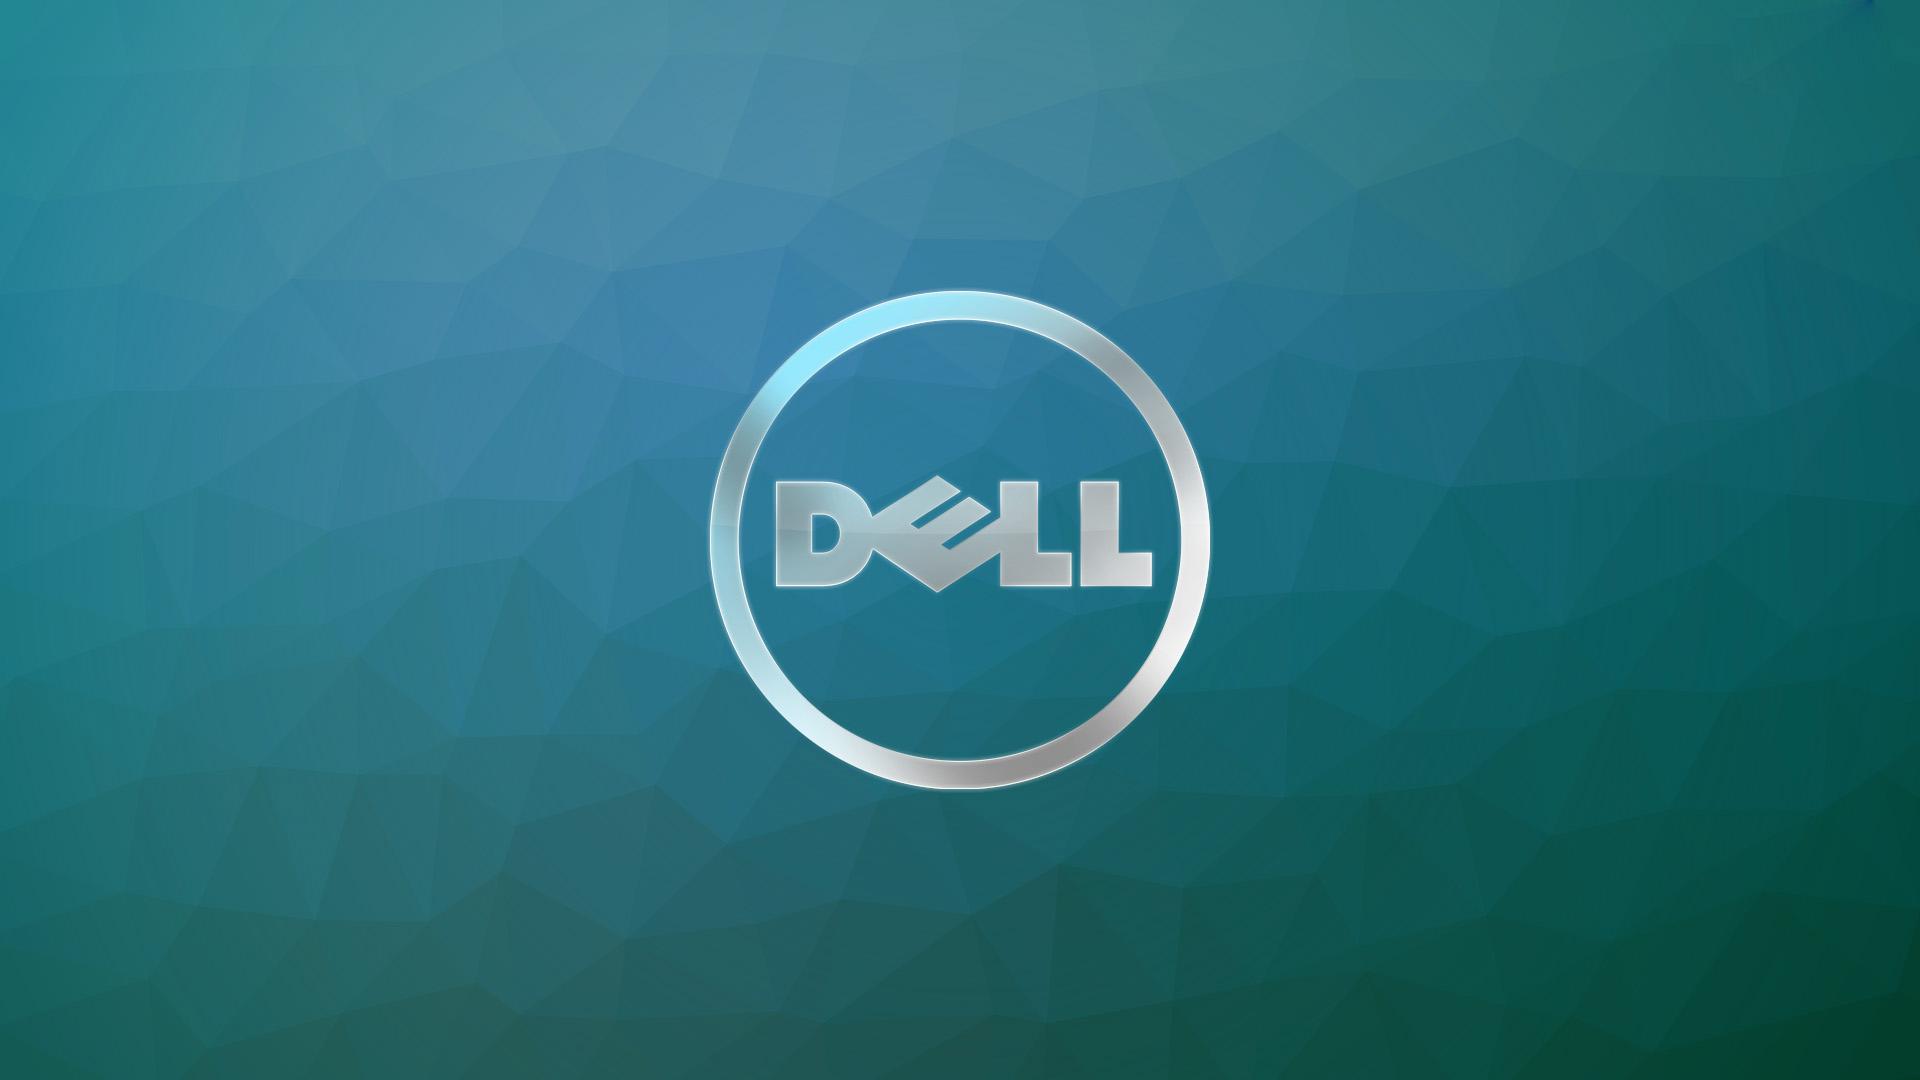 Dell Logo Hd Wallpaper